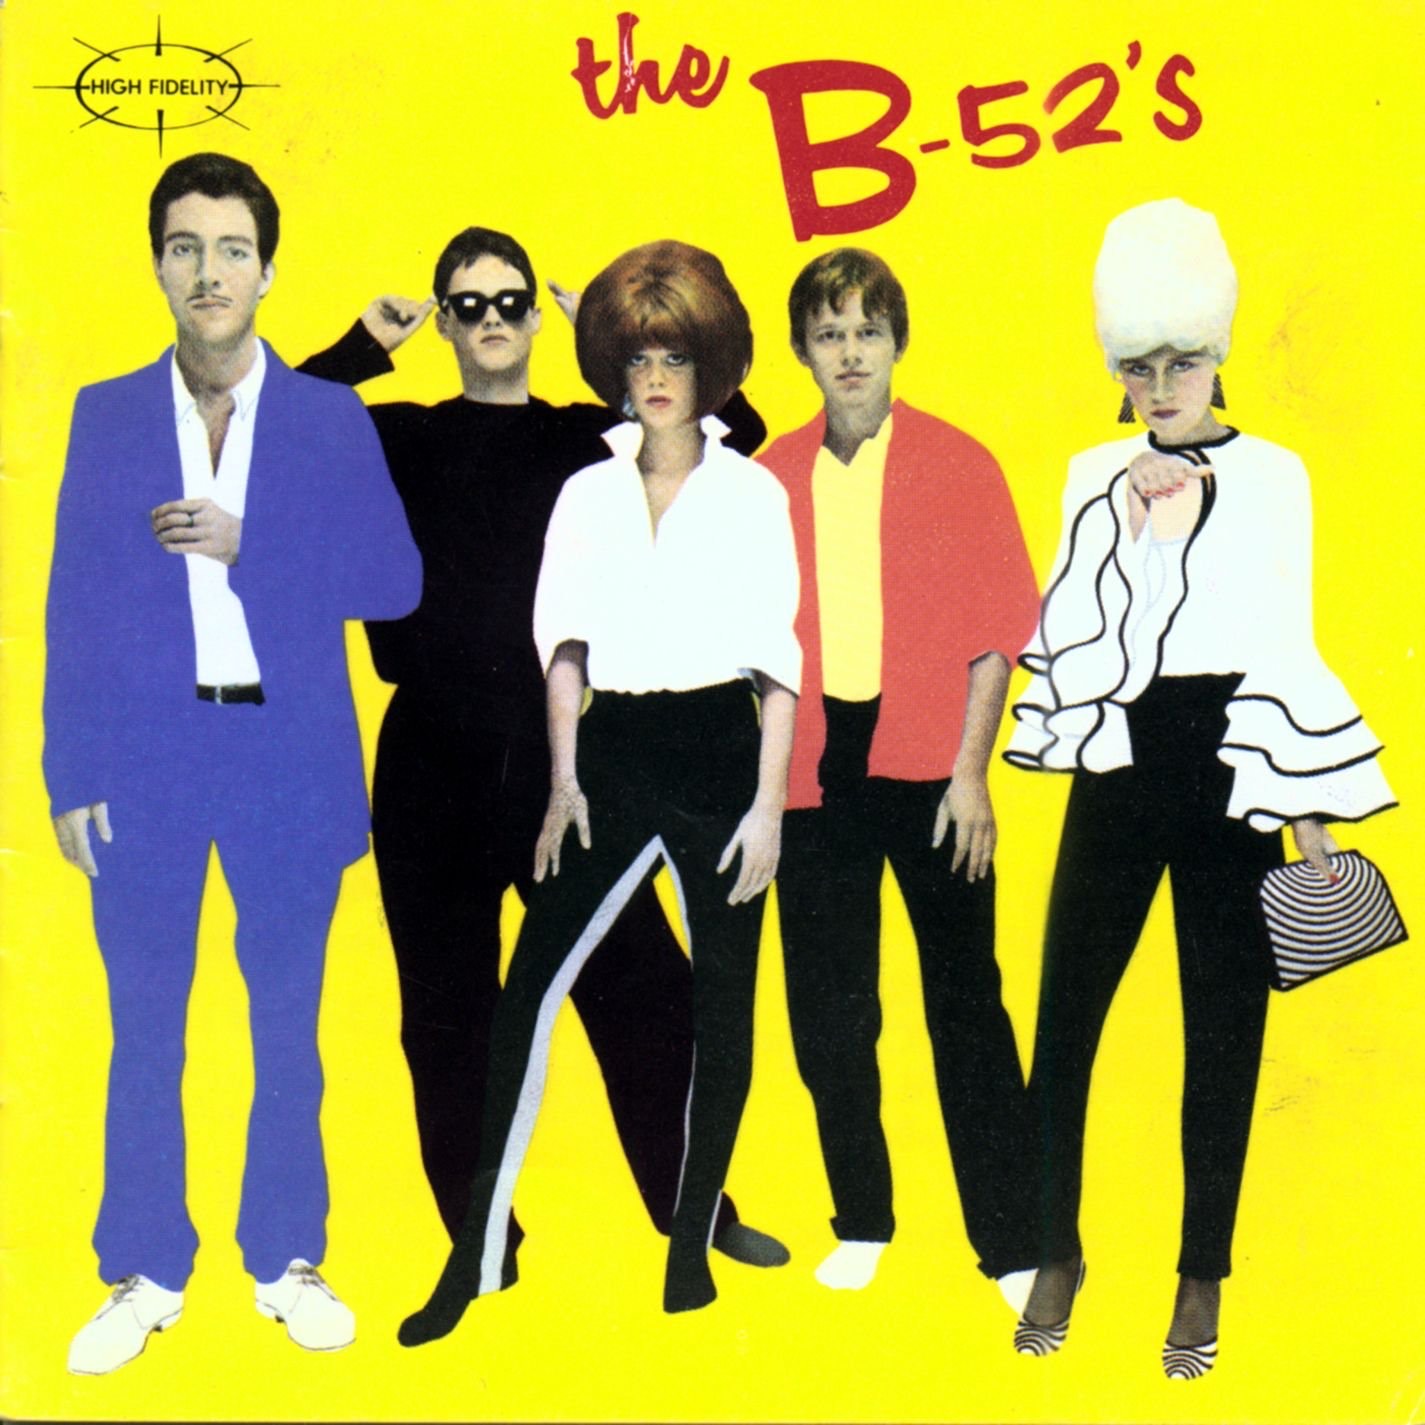 The B-52's album cover